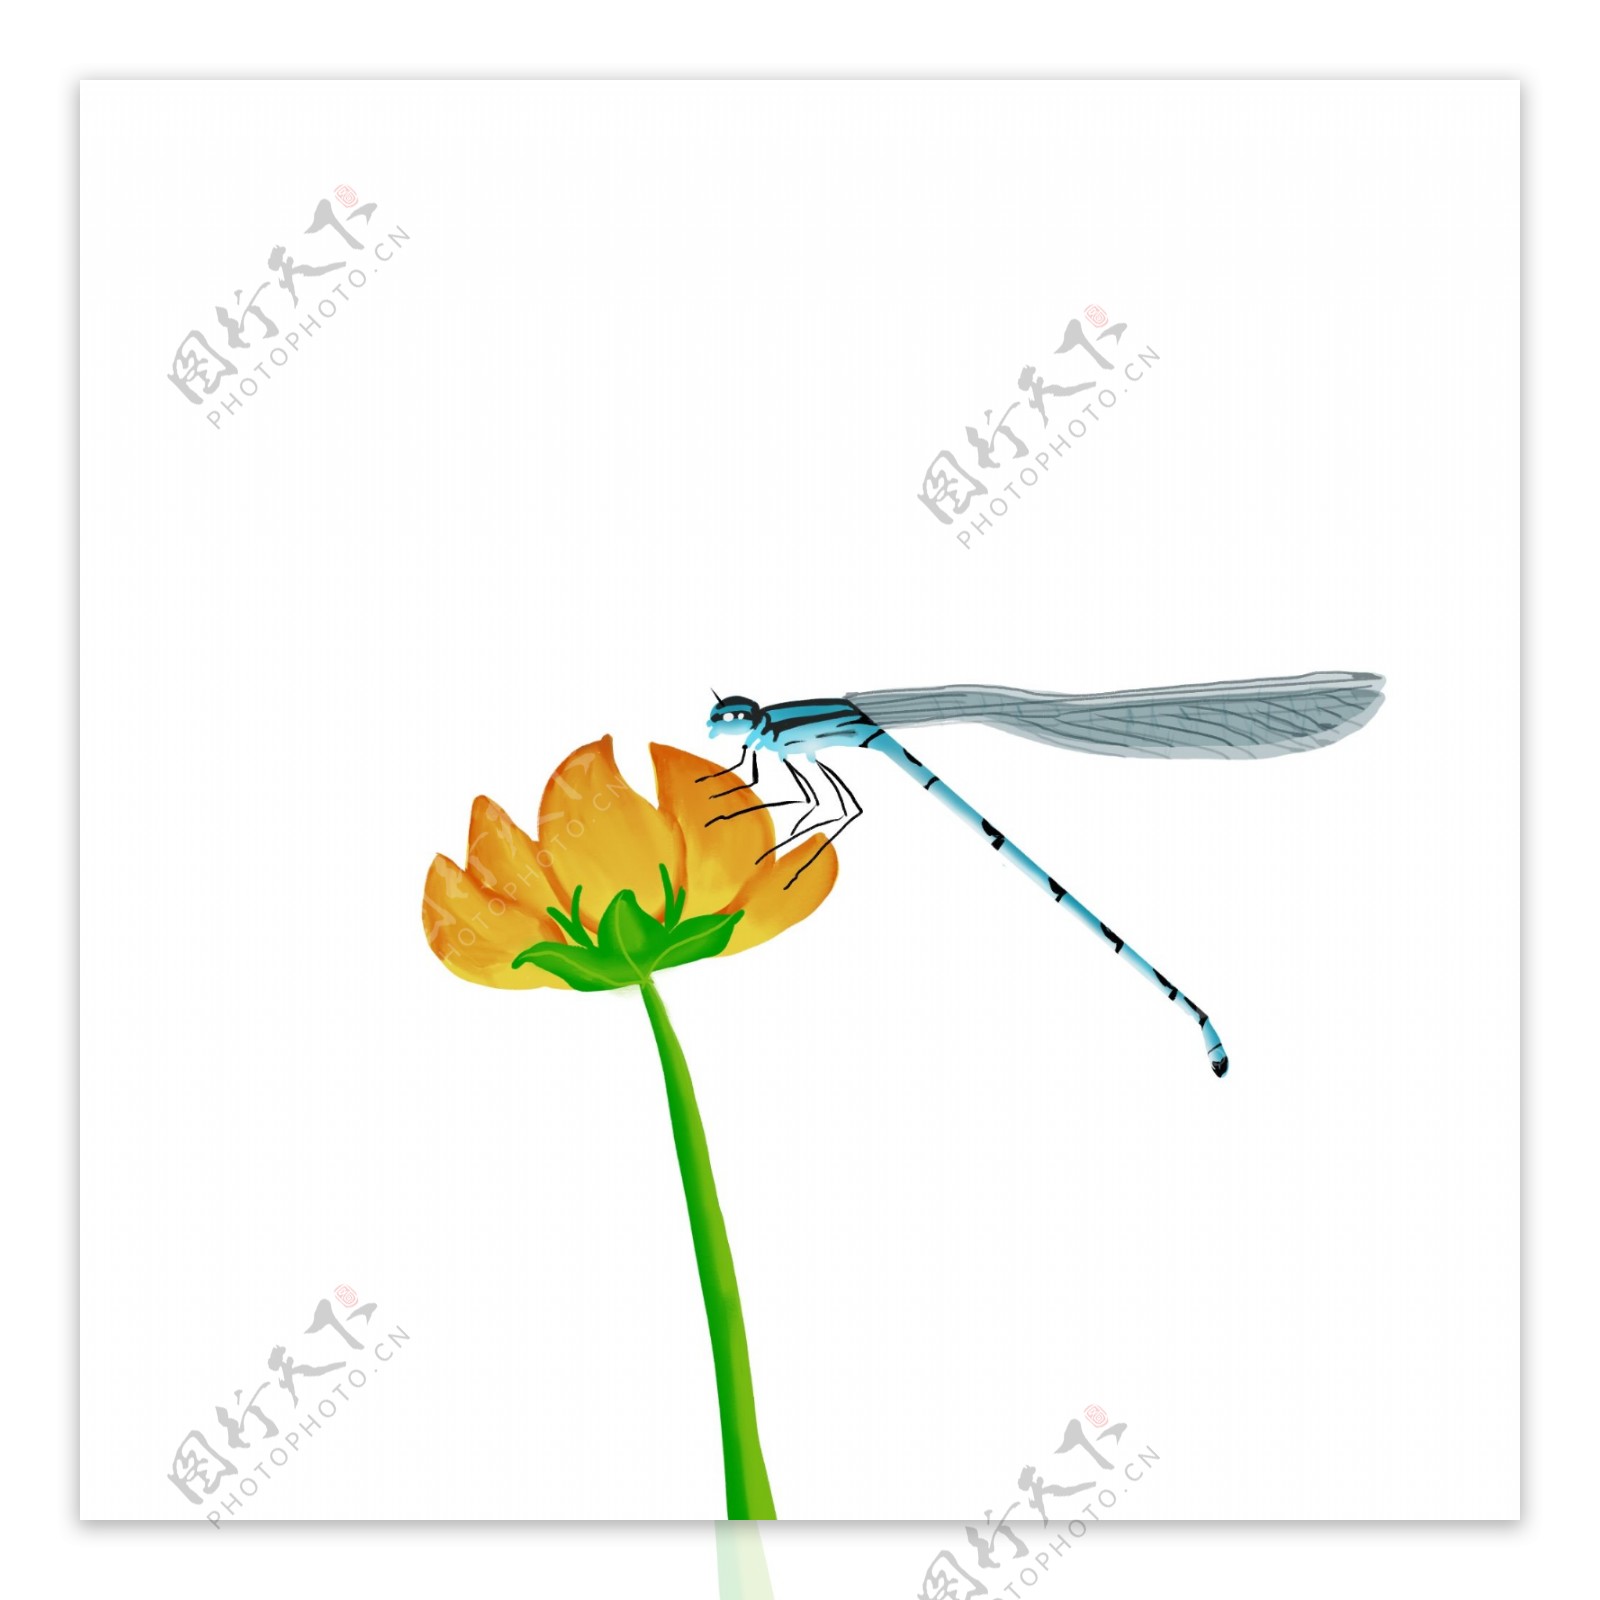 原创手绘正在吃花蜜的蜻蜓